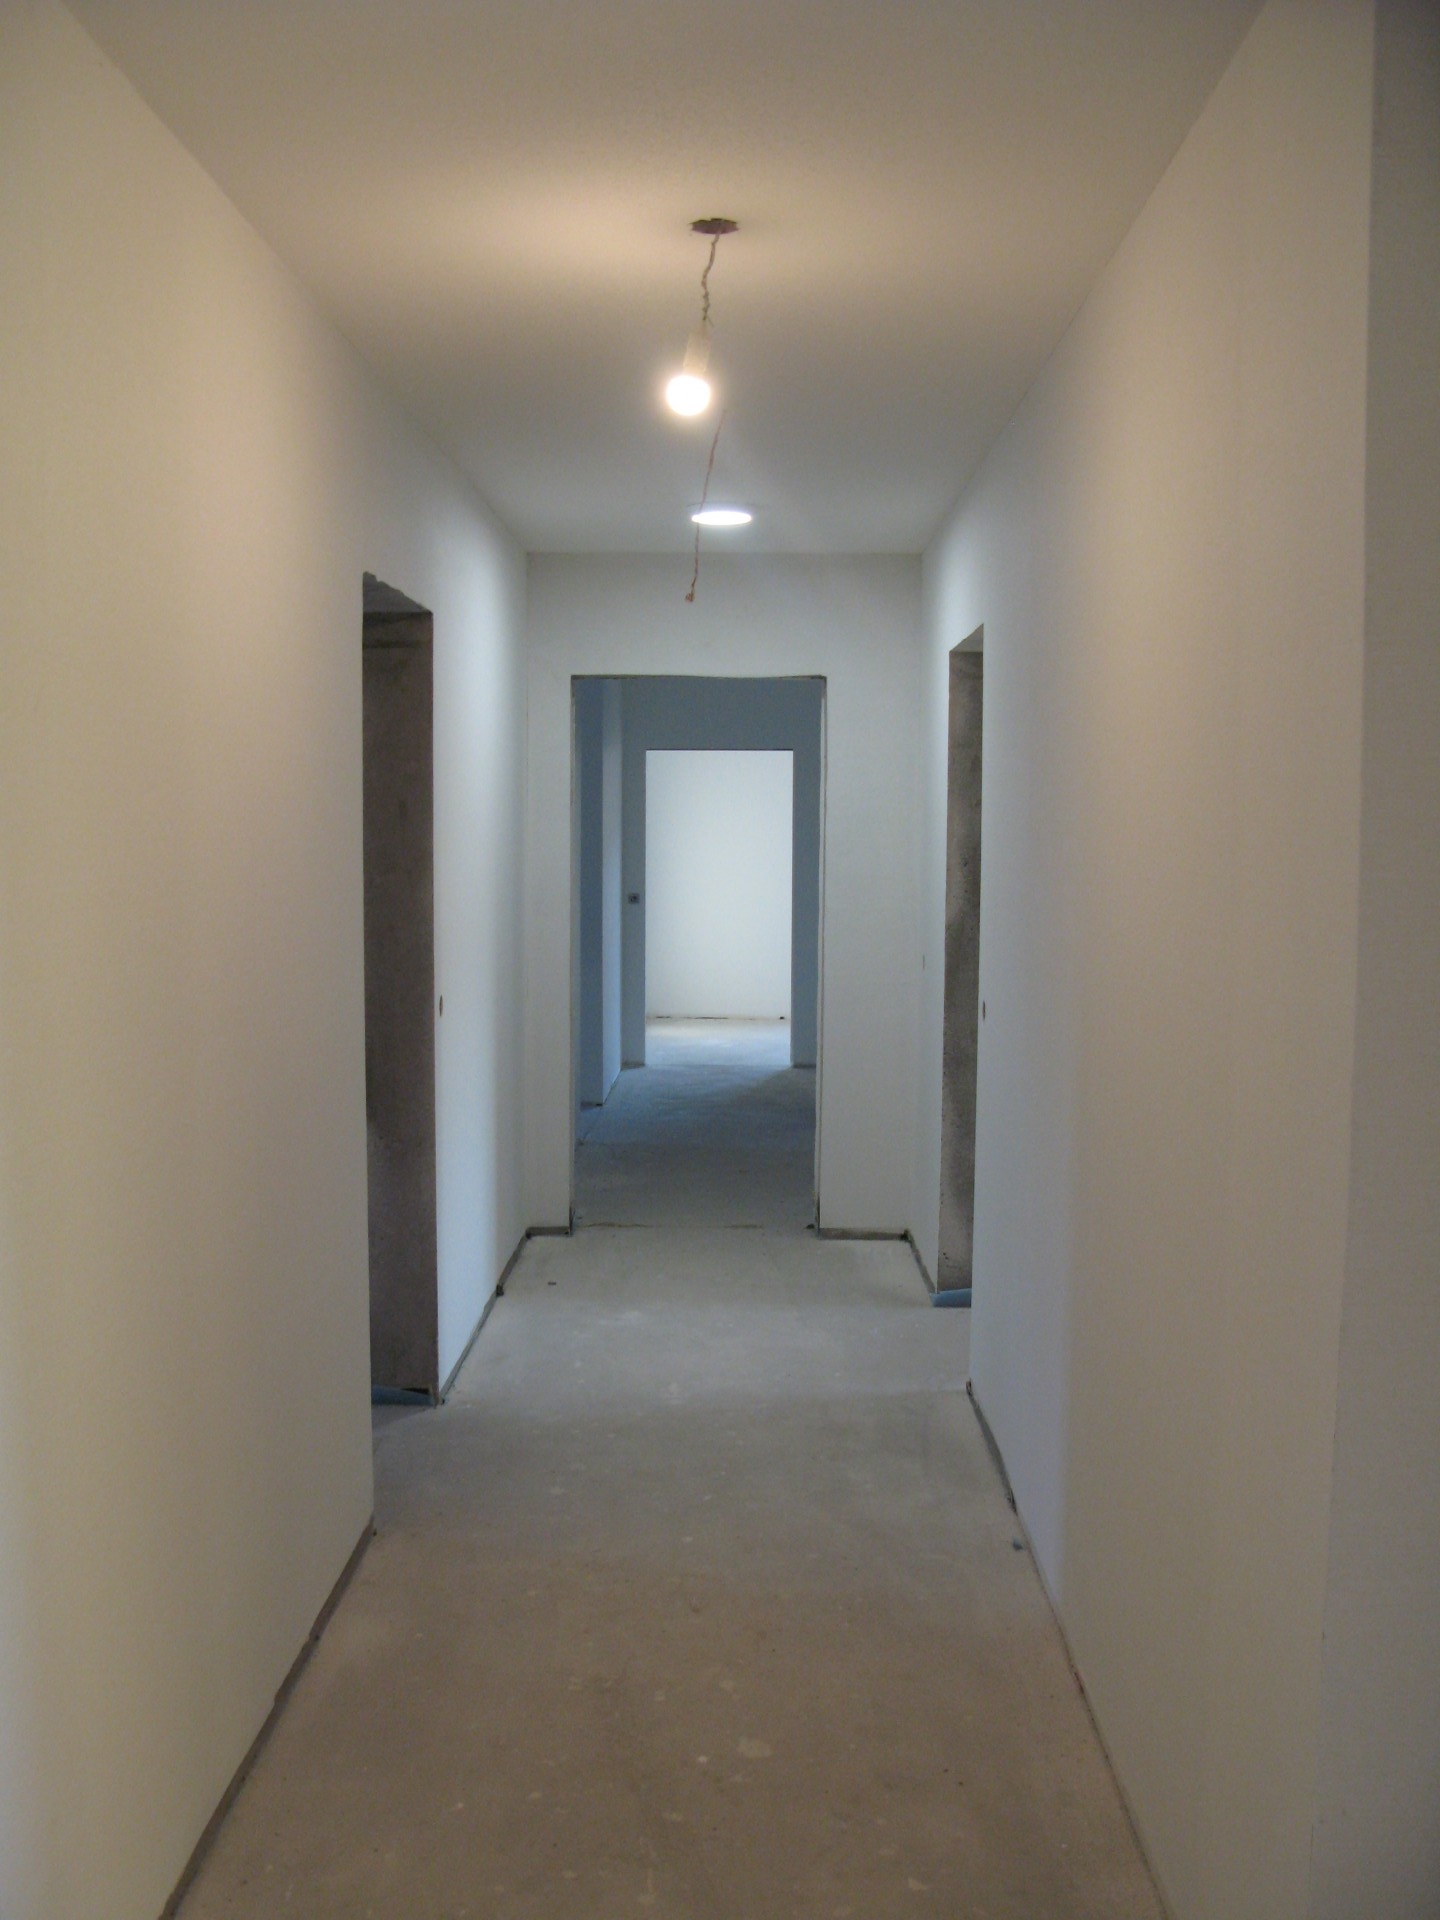 BouxLJdC BâtA 2e etage Couloir 20200808